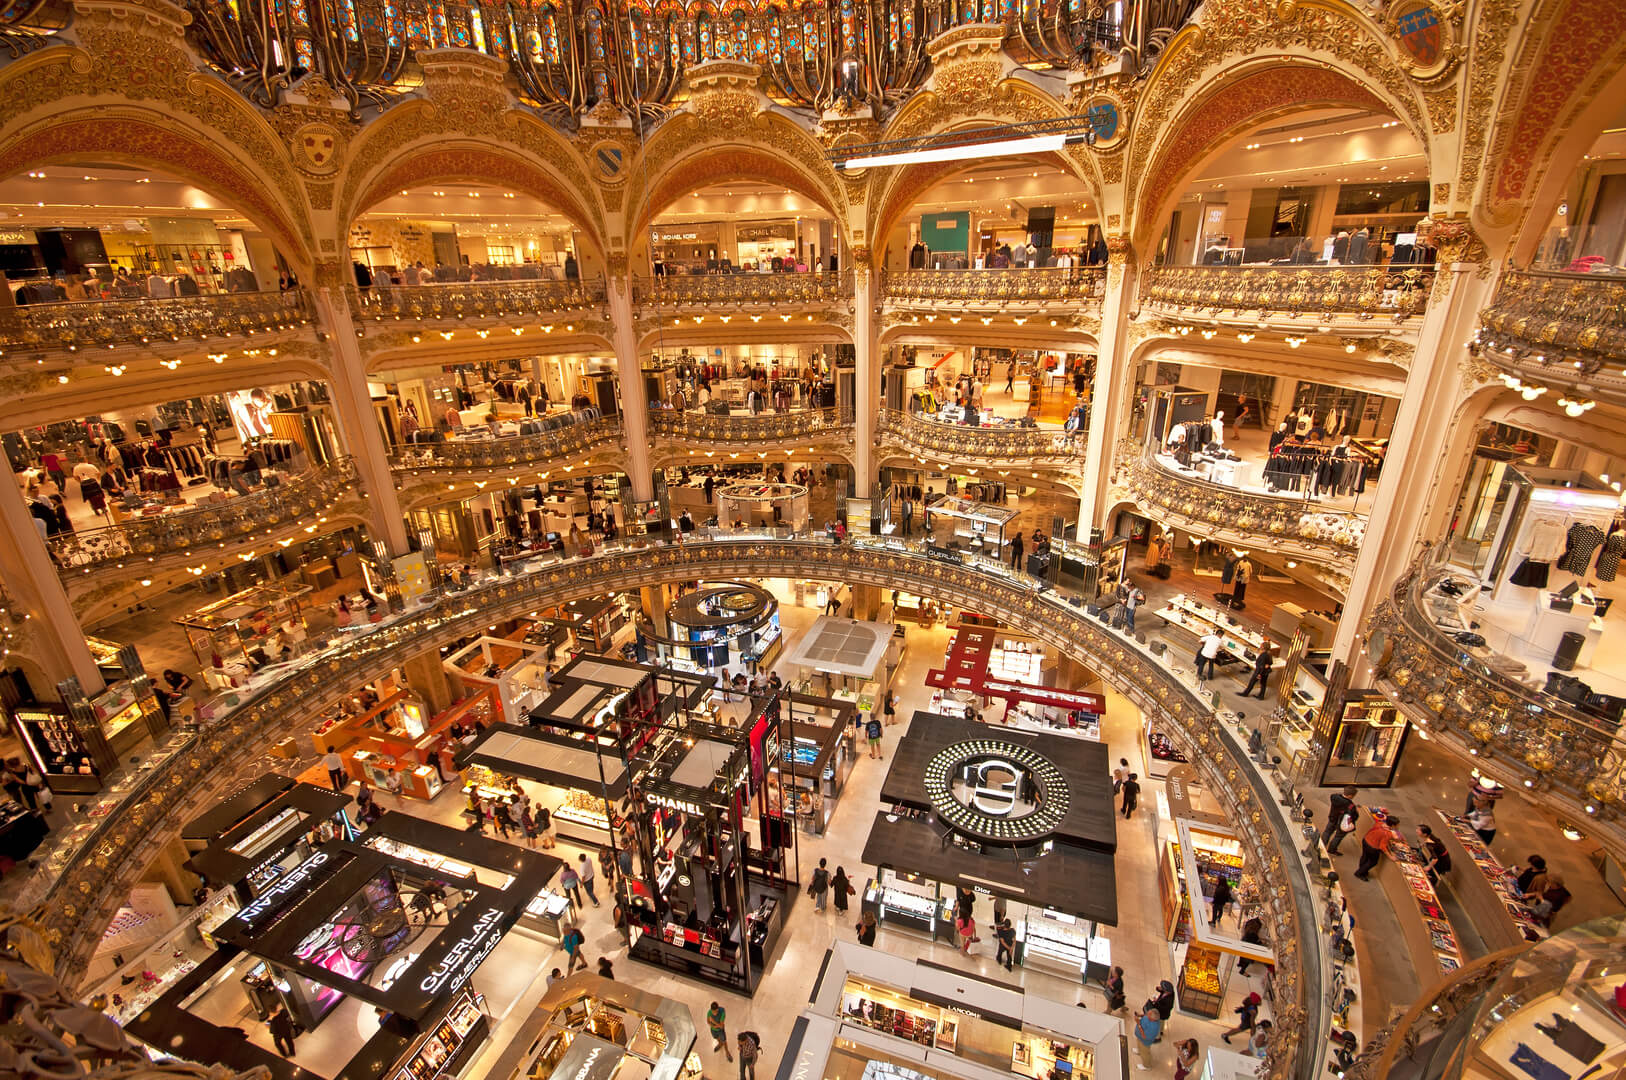 Interno delle Galeries Lafayette a Parigi. L'architetto Georges Chedanne ha progettato il negozio dove una cupola di vetro e acciaio in stile Art Nouveau fu terminata nel 1912